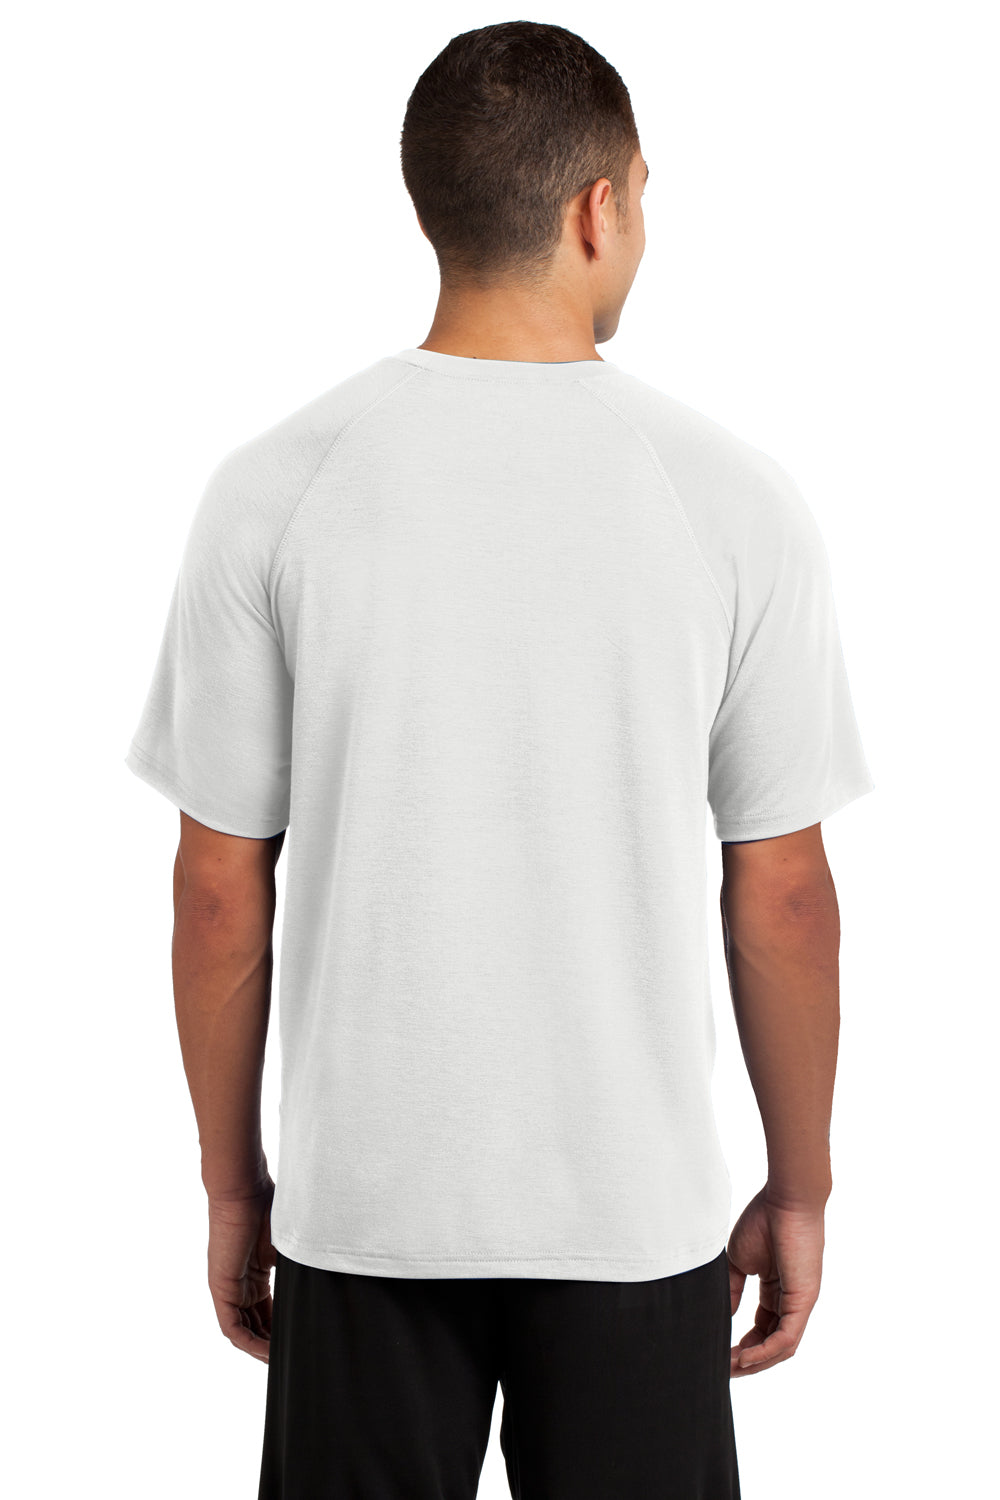 Sport-Tek ST700 Mens Ultimate Performance Moisture Wicking Short Sleeve Crewneck T-Shirt White Back